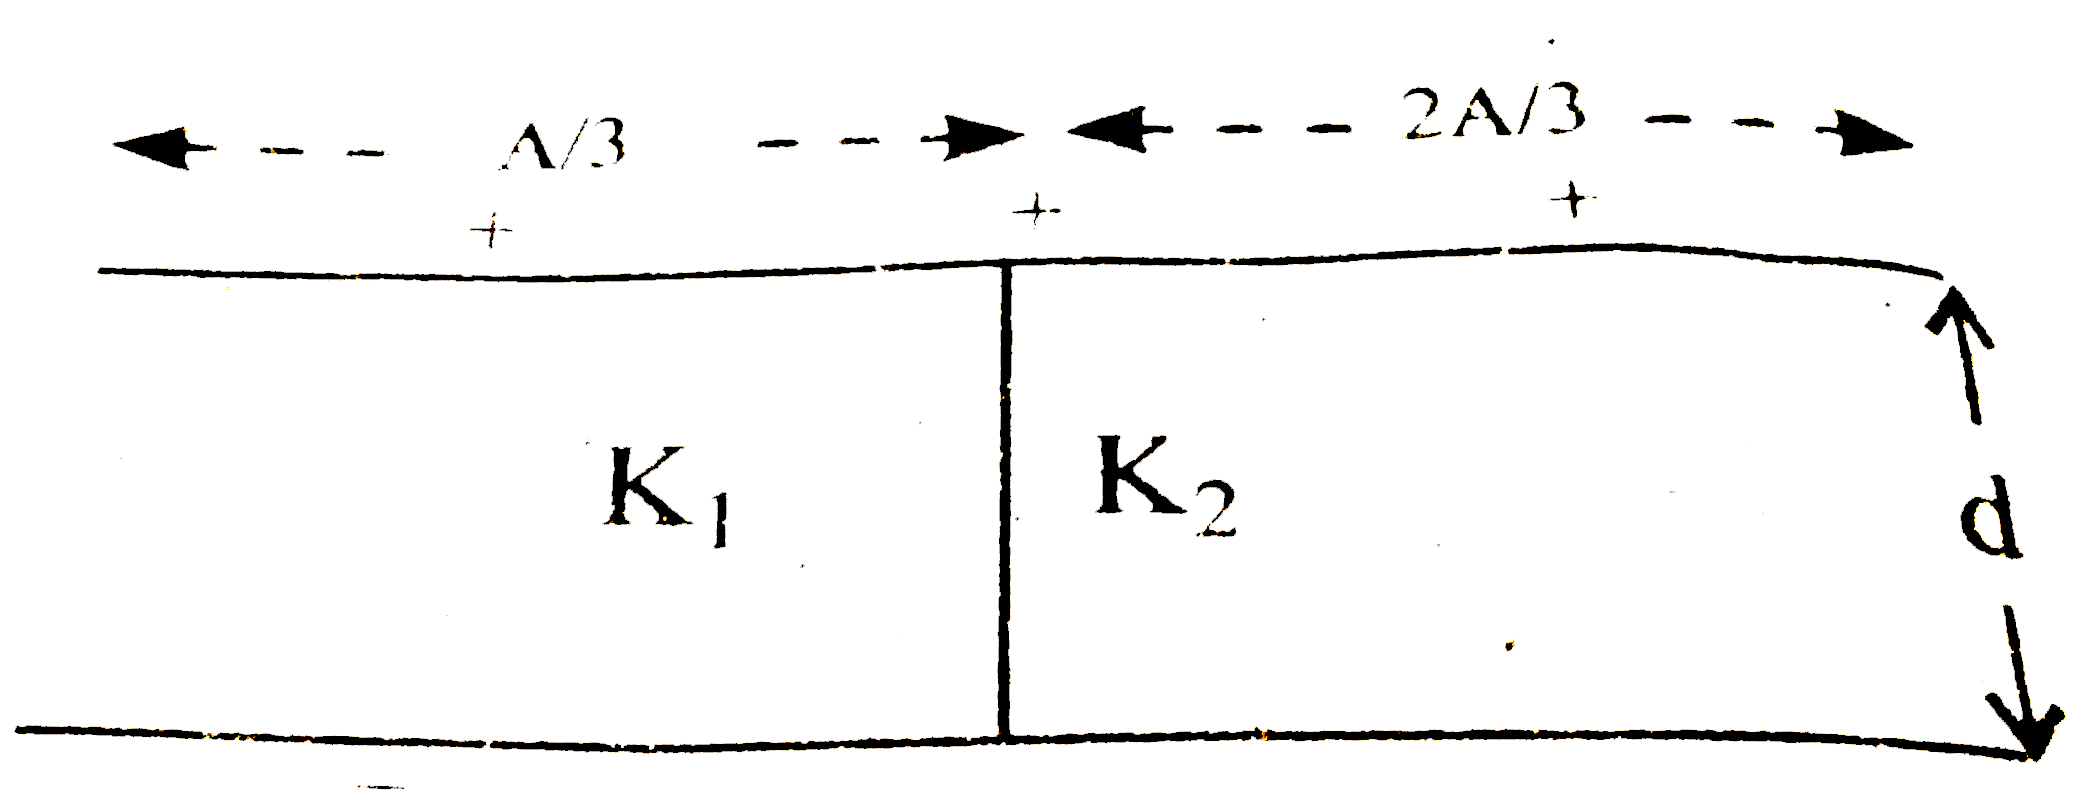 एक समान्तर प्लेट संधारित्र की प्रत्येक प्लेट का क्षेत्रफल A तथा उनके बीच की दुरी d है । चित्र के अनुसार प्लेटों की बीच K(1) तथा  K(2) परावैधुतांक के गुटके रखे हैं । संधारित्र की धारिता ज्ञात कीजिए